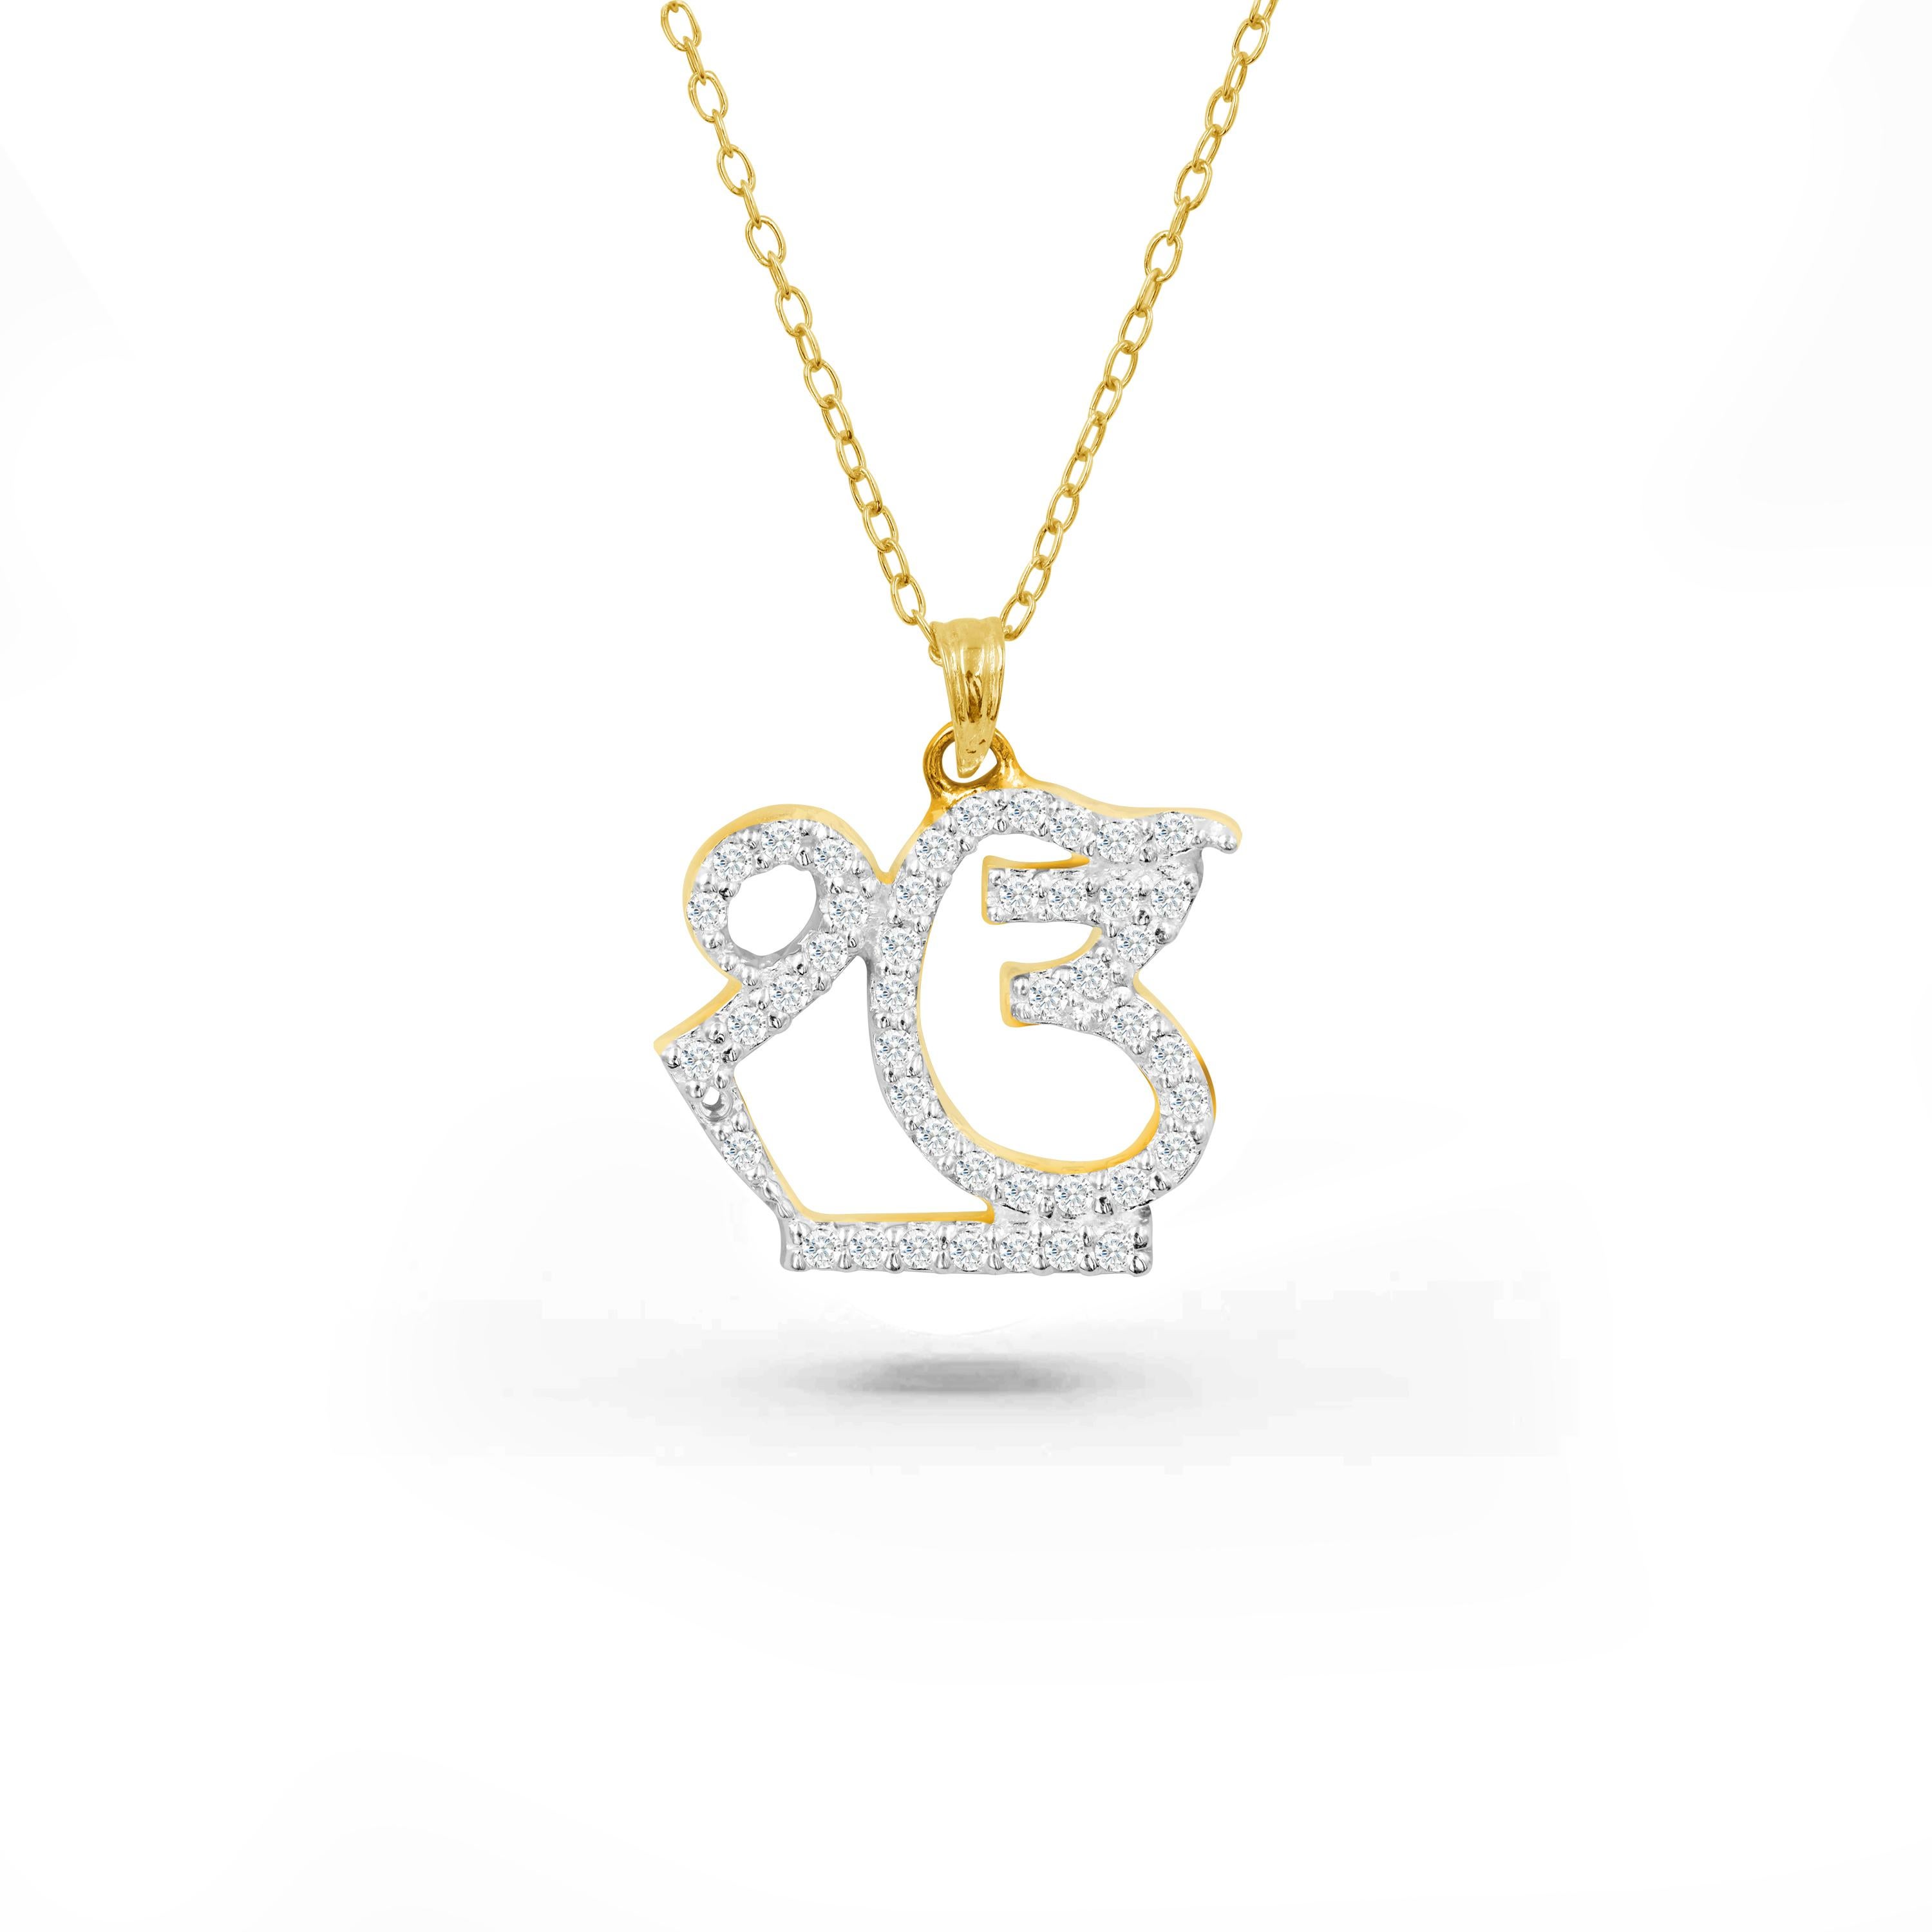 Le collier en diamants Ik Onkar, fabriqué à la main, est idéal à porter au quotidien pour apporter paix intérieure et spiritualité. Ce magnifique collier religieux sikh est une pièce de choix. Ce collier sikhisme peut être personnalisé sur la